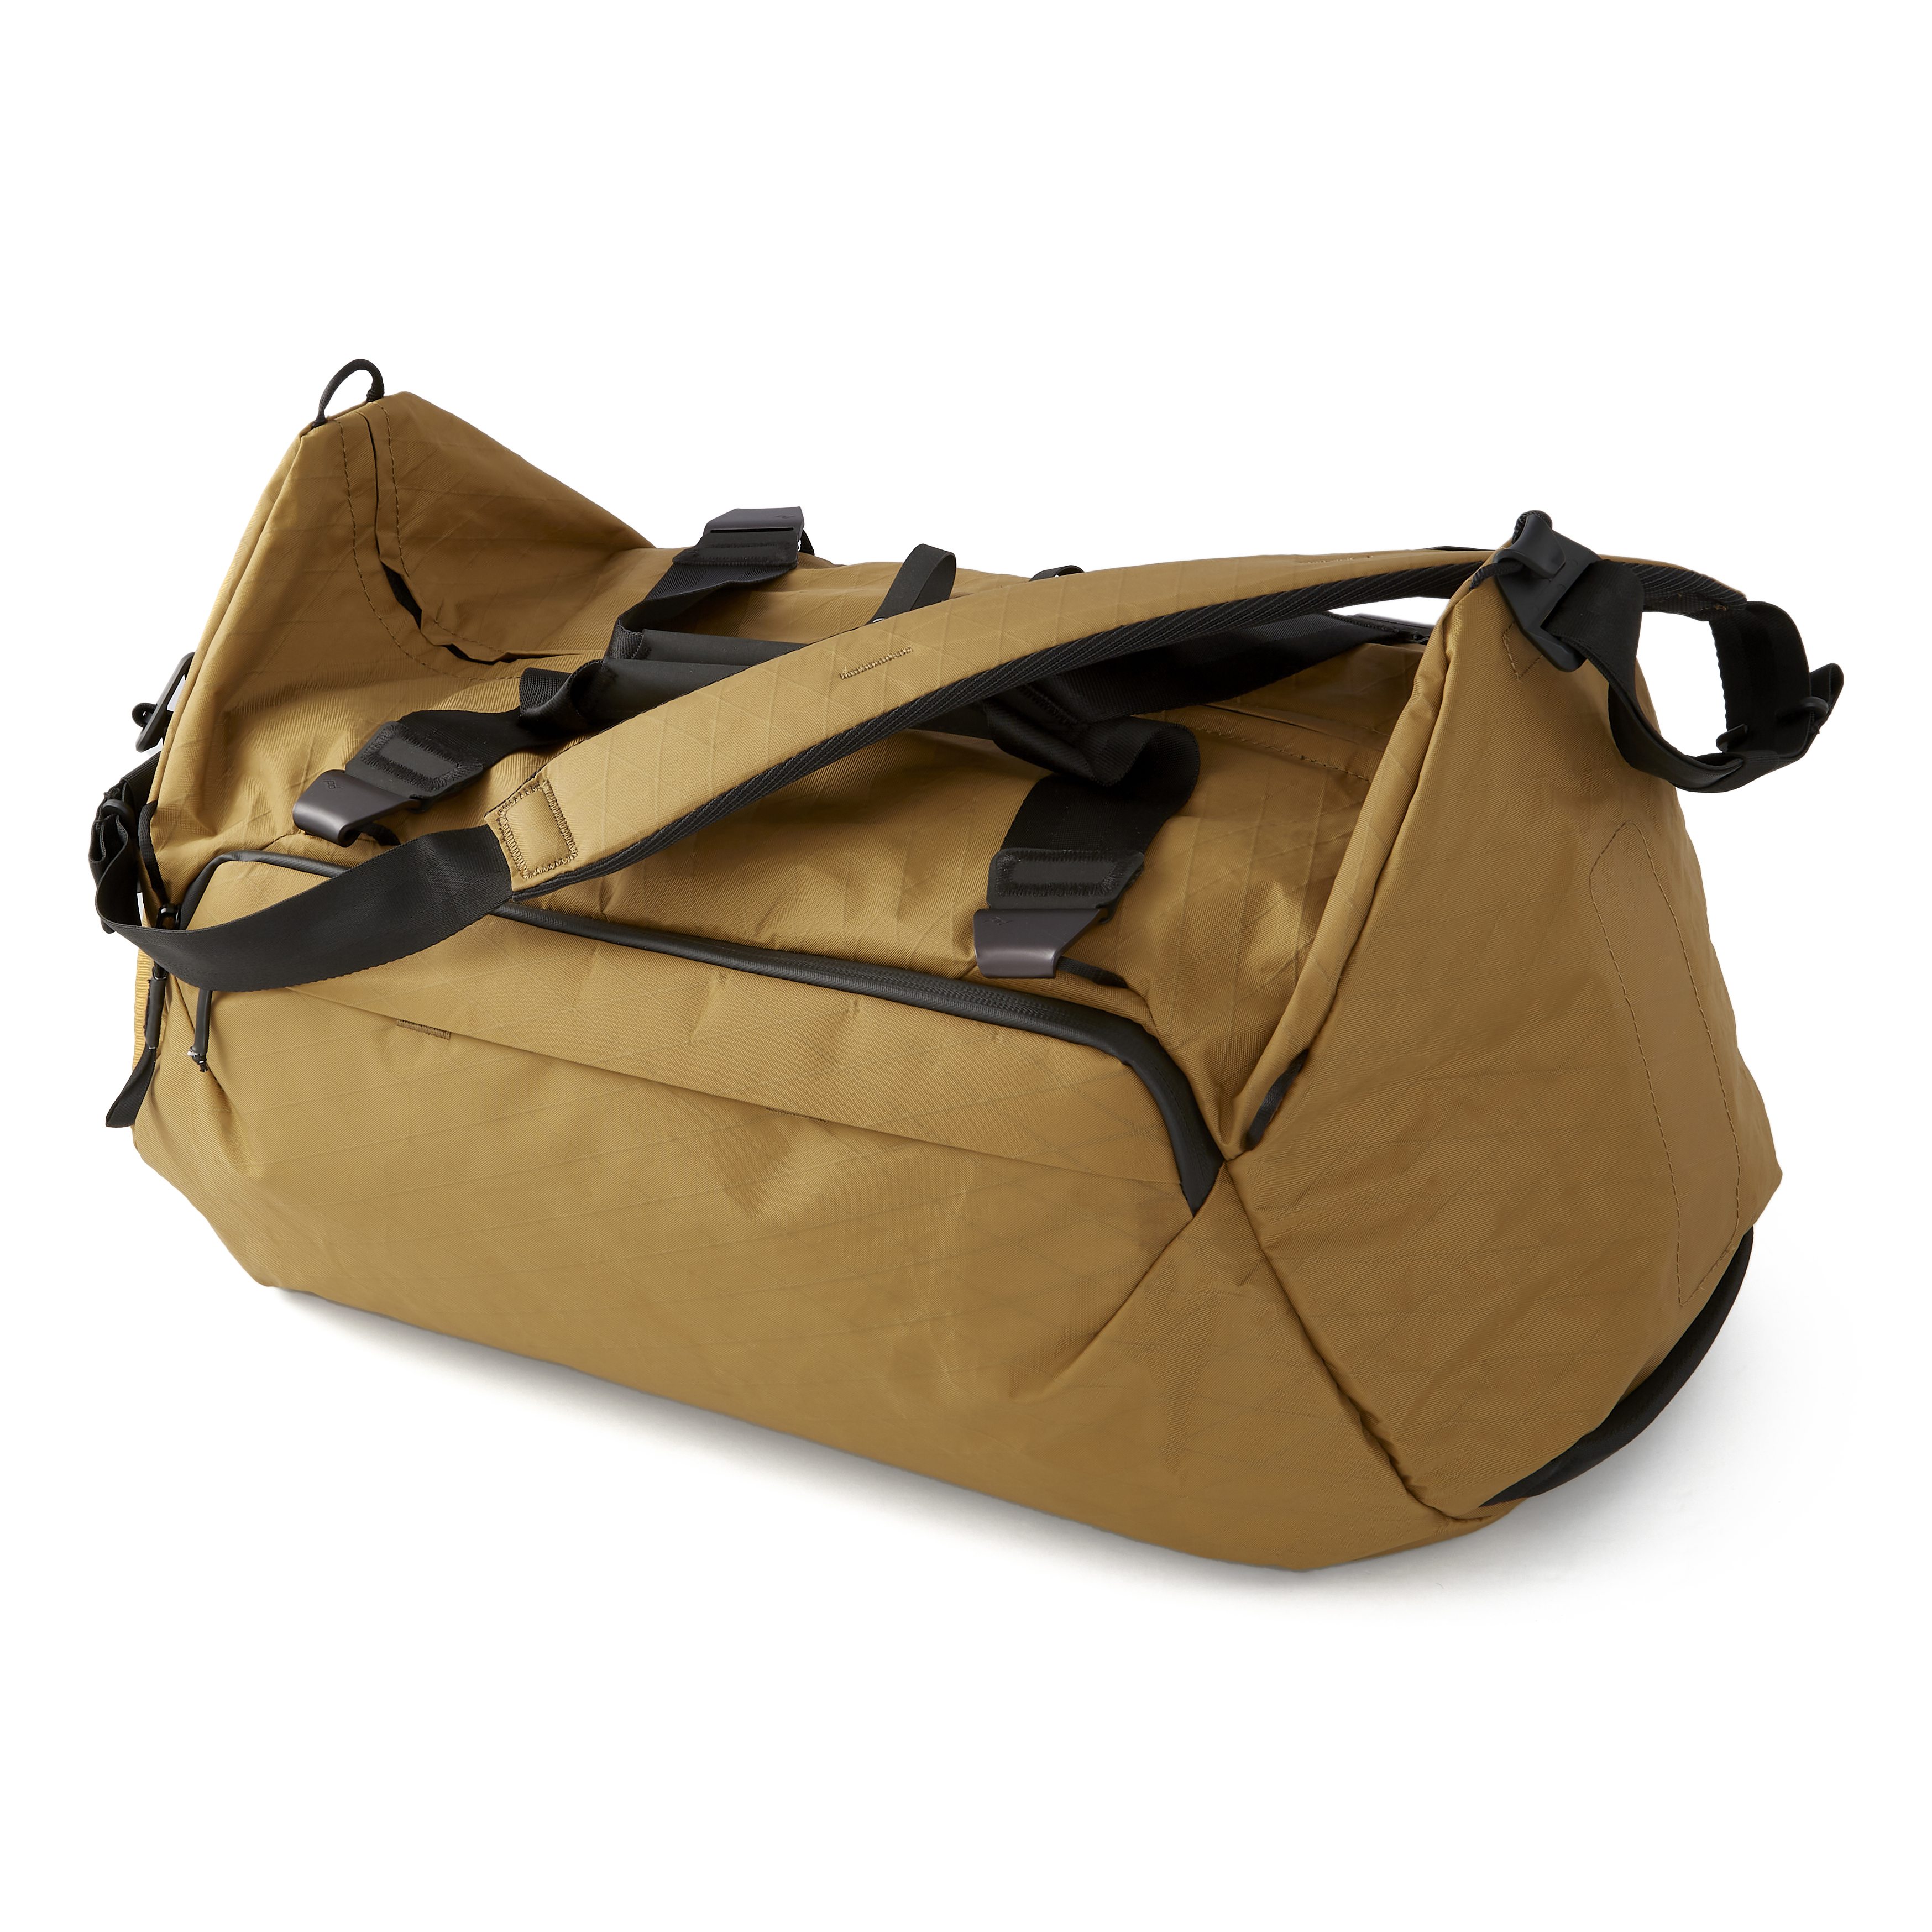 Hyperlite Mountain Gear Dyneema Duffel Bag | Blister